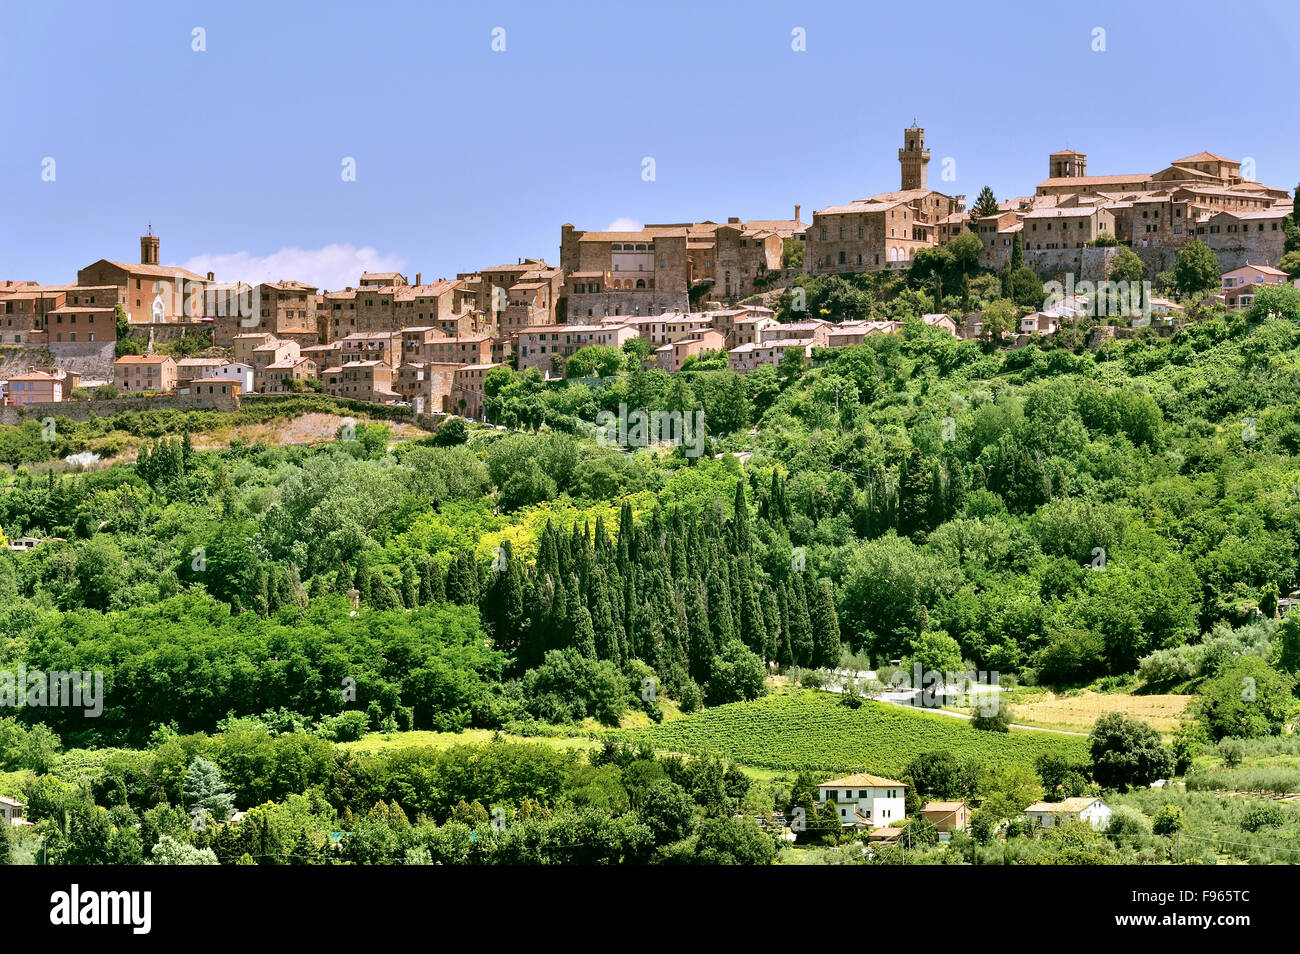 Montepulciano, cittadina rinascimentale della Toscana situata su una collina, la vista con il verde che lo circonda, Italia Foto Stock